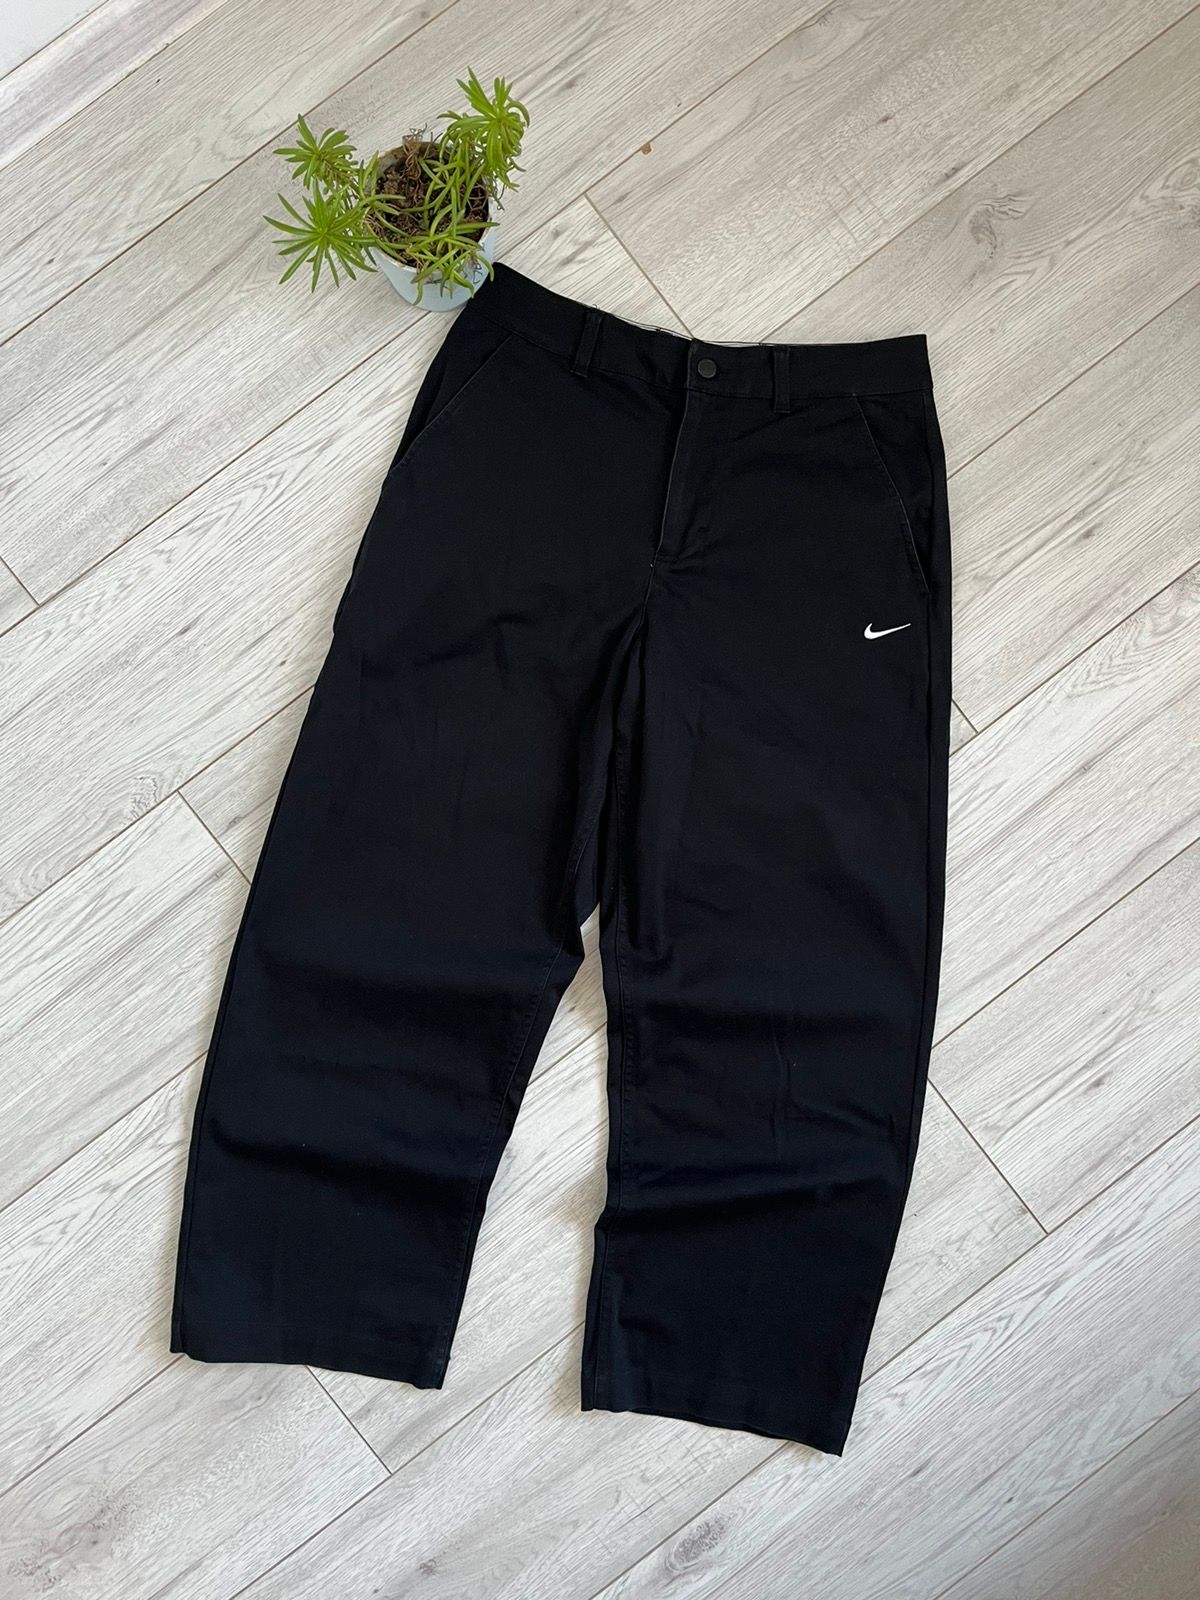 Pre-owned Nike X Vintage Sweatpants Nike Streetwear Drip Y2k Casual Style 00s Outdoor In Black